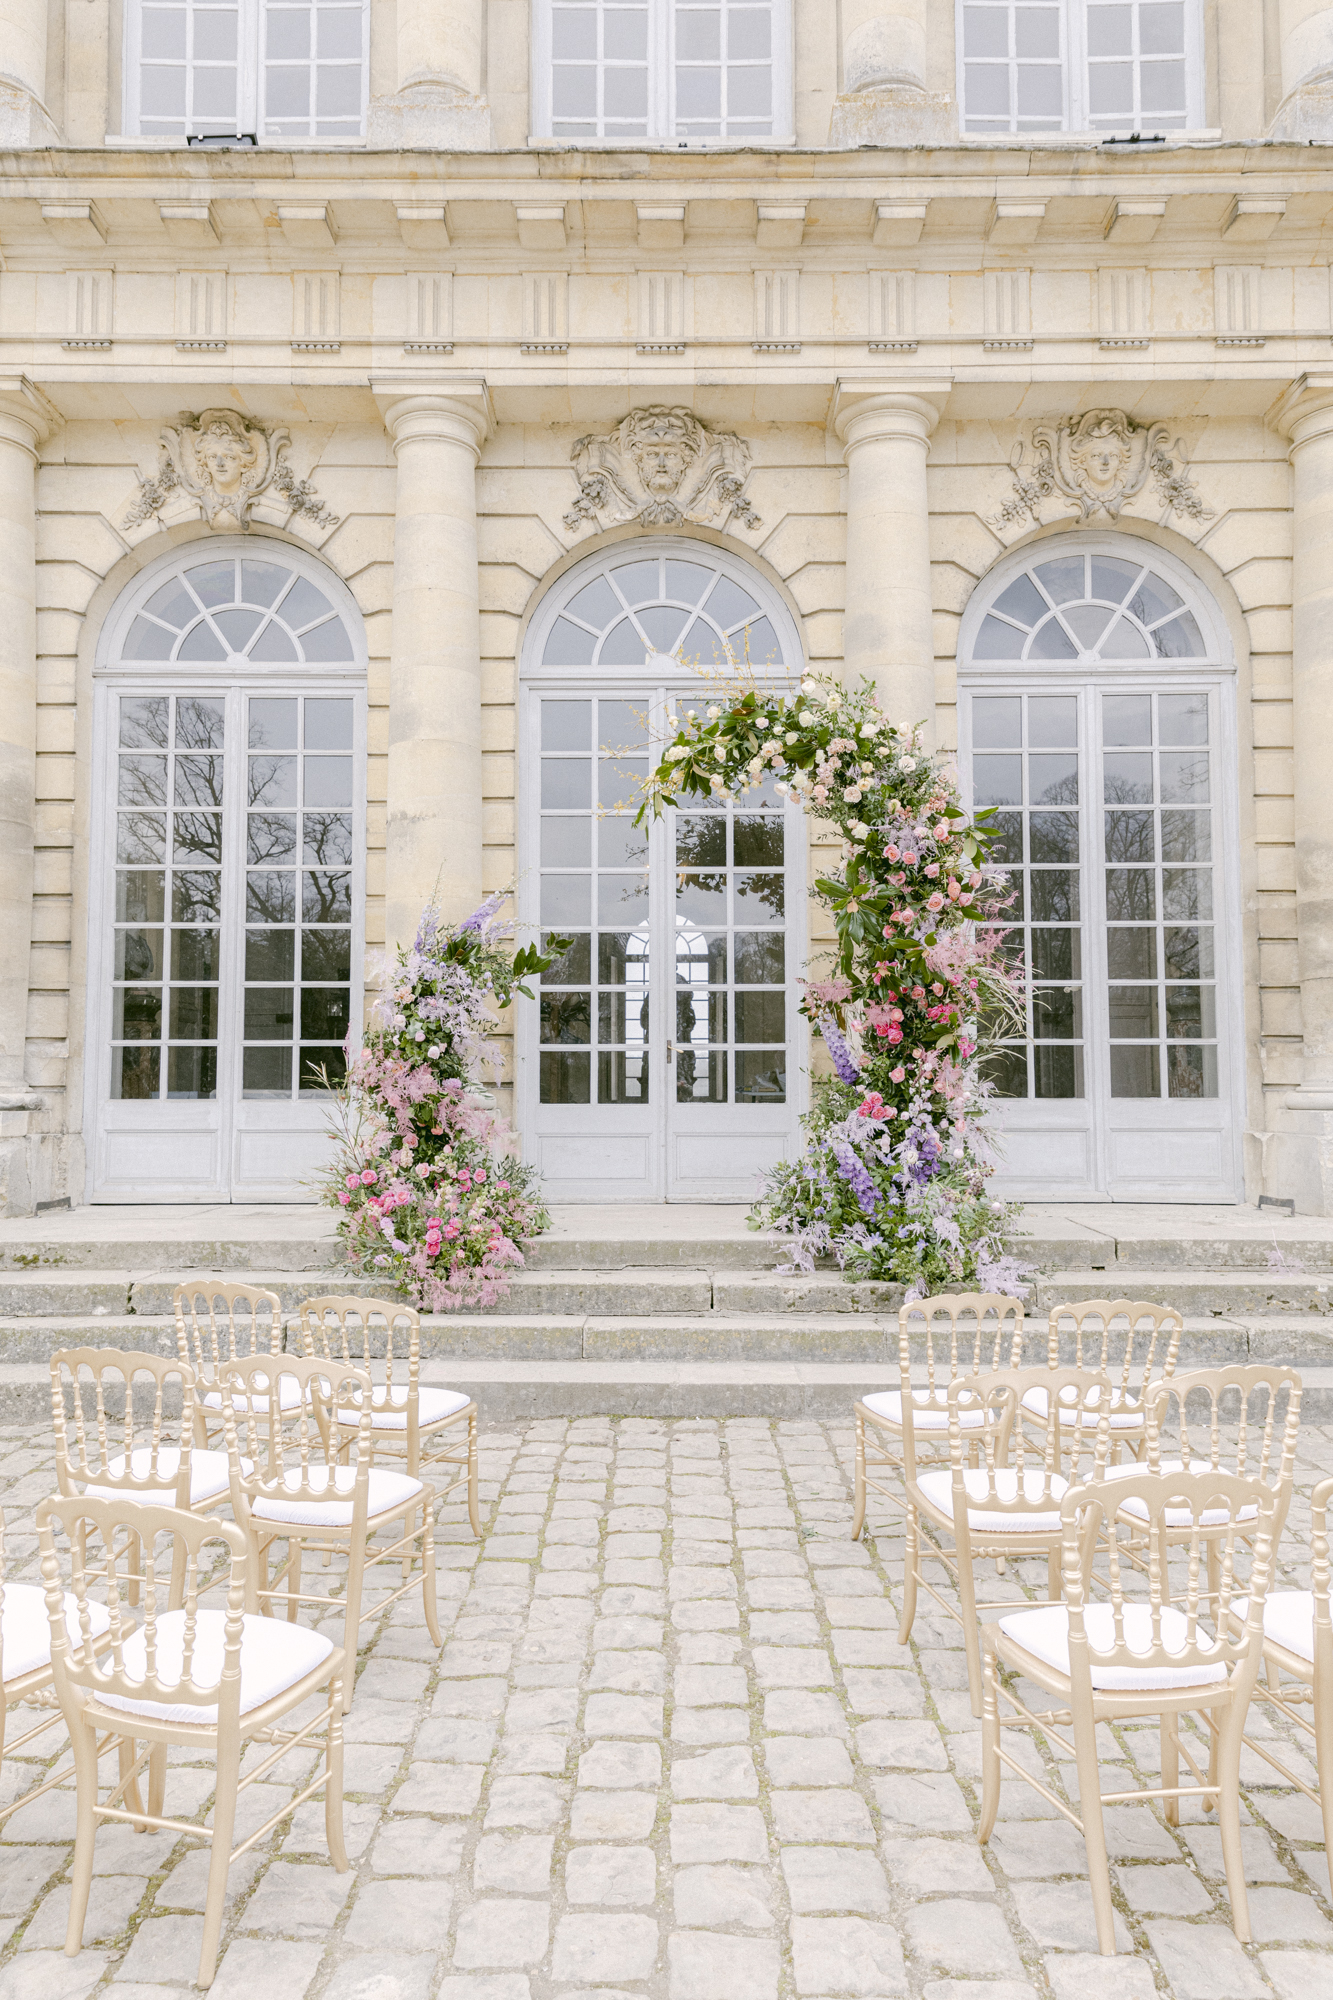 Chateau de Champlatreux Paris, France destination wedding. ceremony site and reception floral arrangements. Luxury destination wedding.